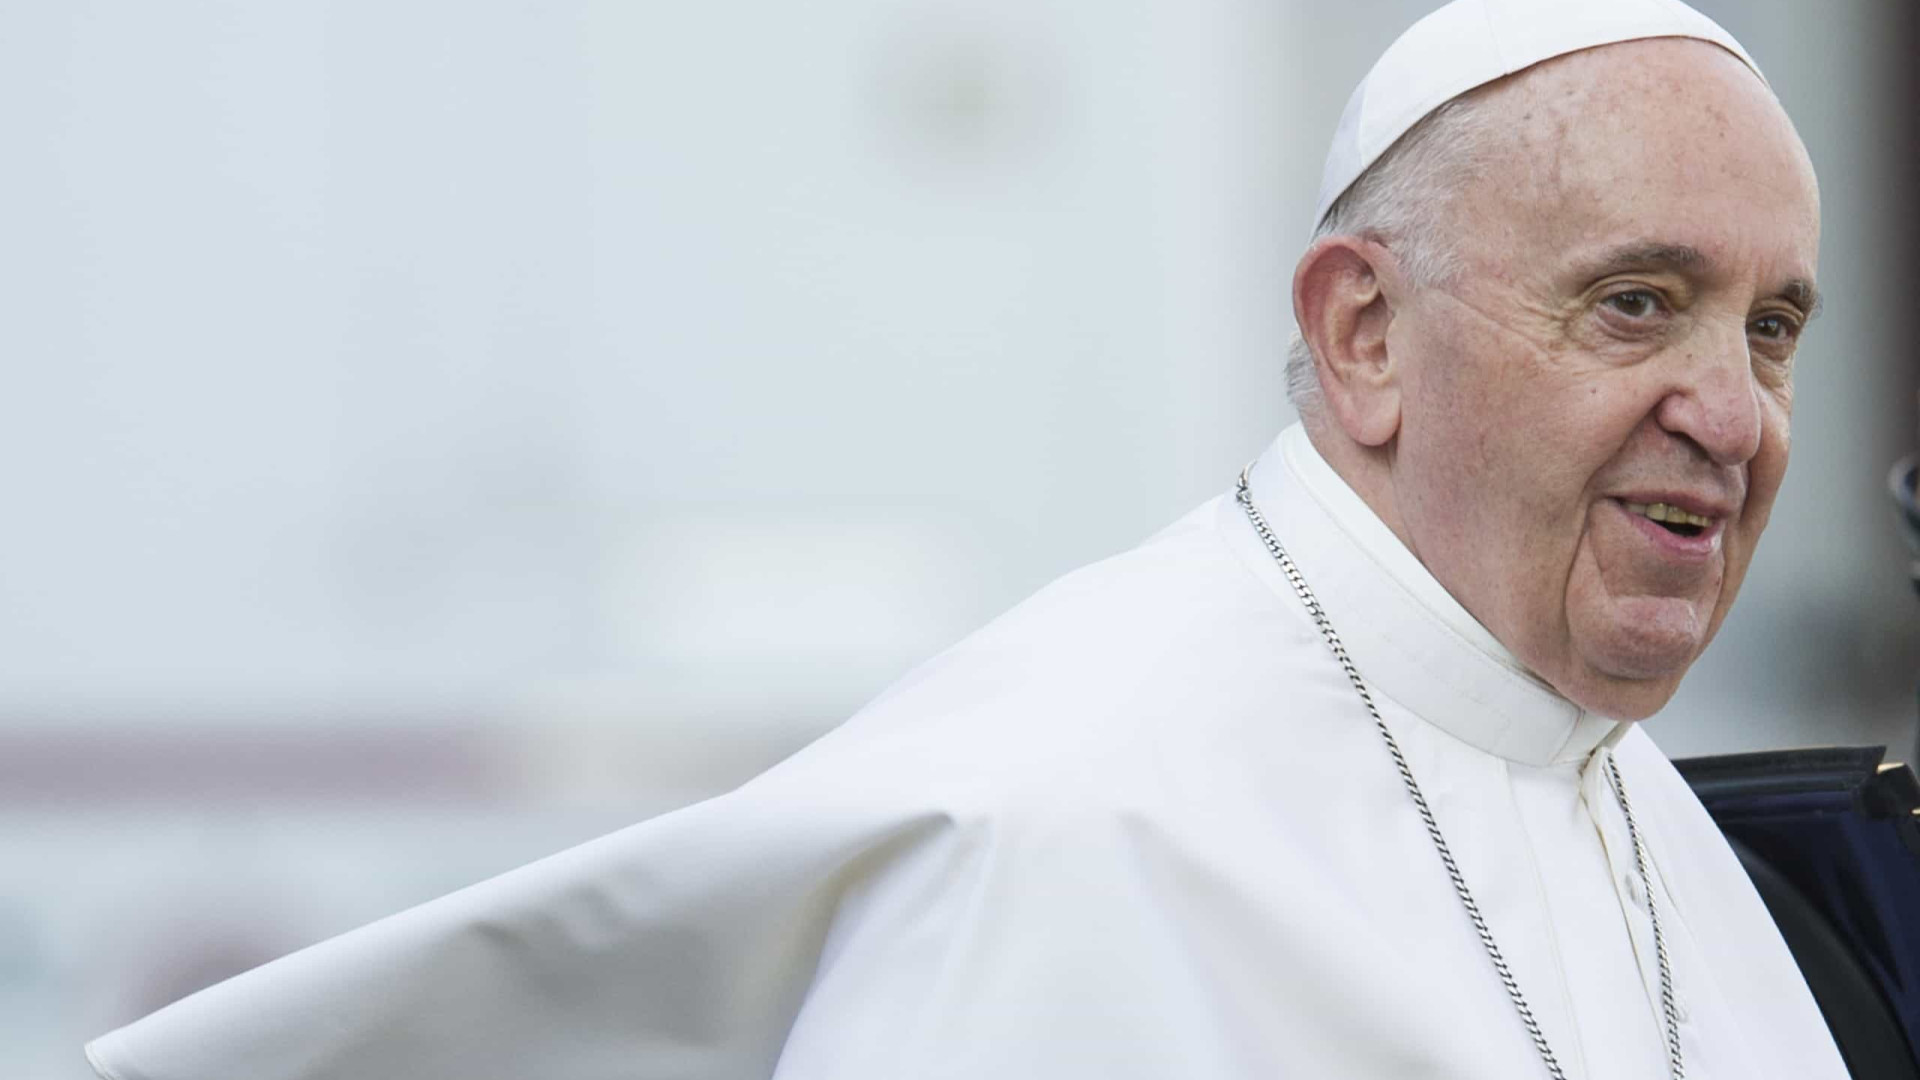 Papa tira poder e independência da Opus Dei em reforma no Vaticano